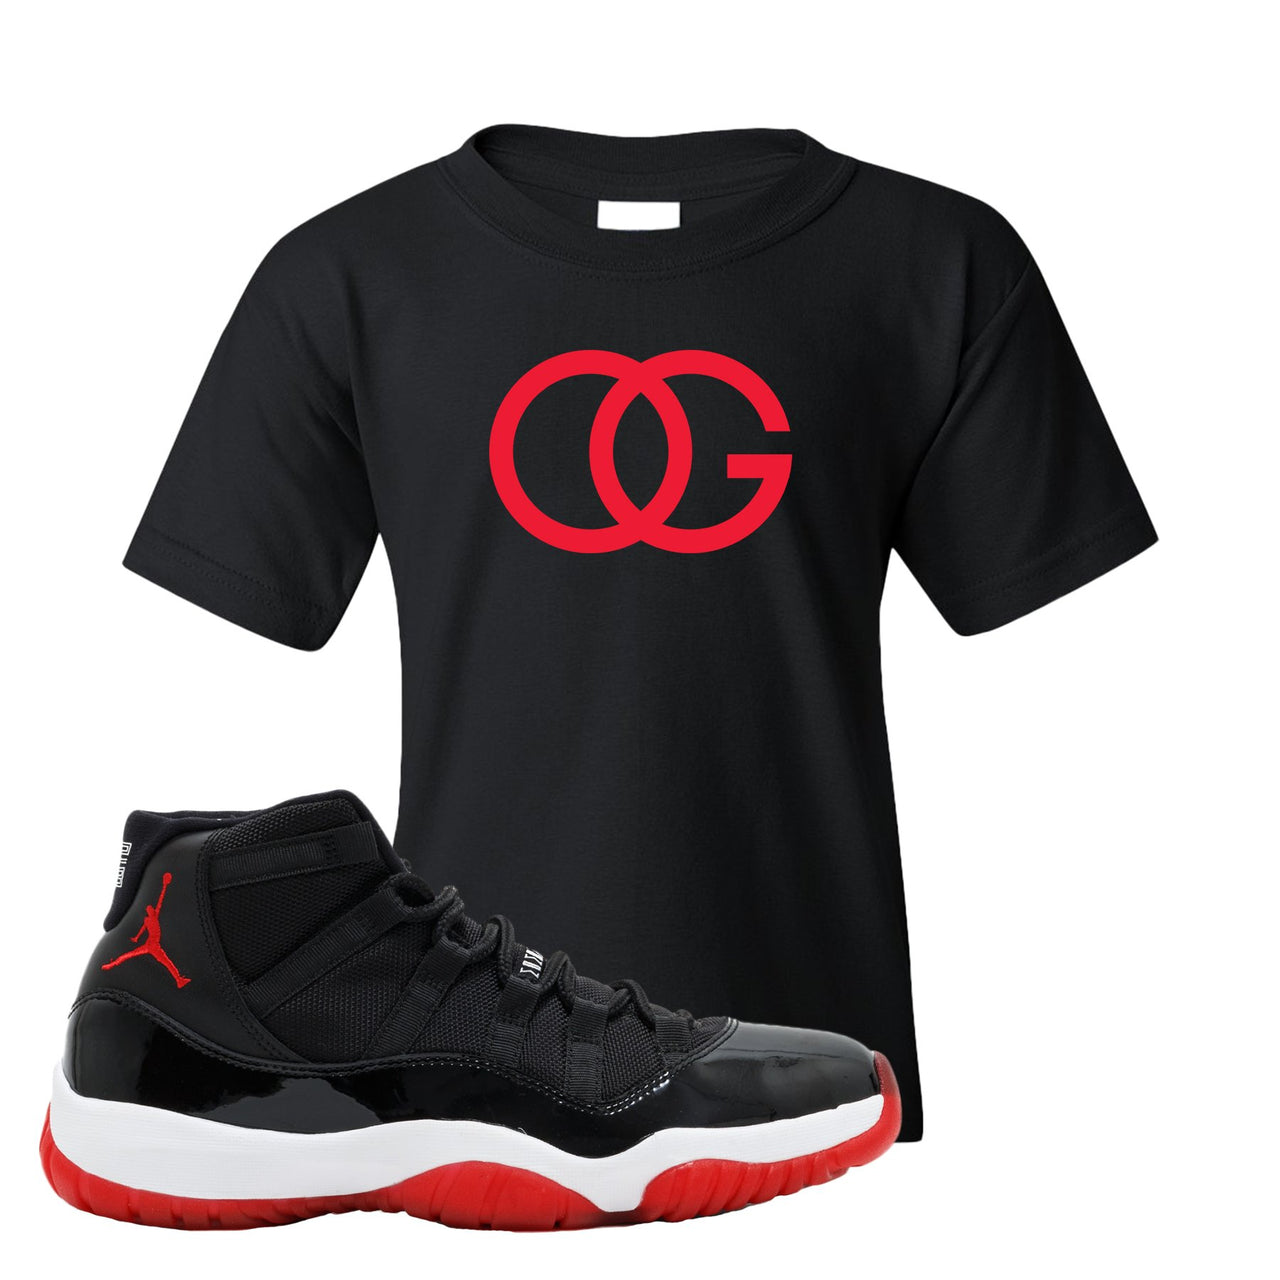 Jordan 11 Bred OG Black Sneaker Hook Up Kid's T-Shirt